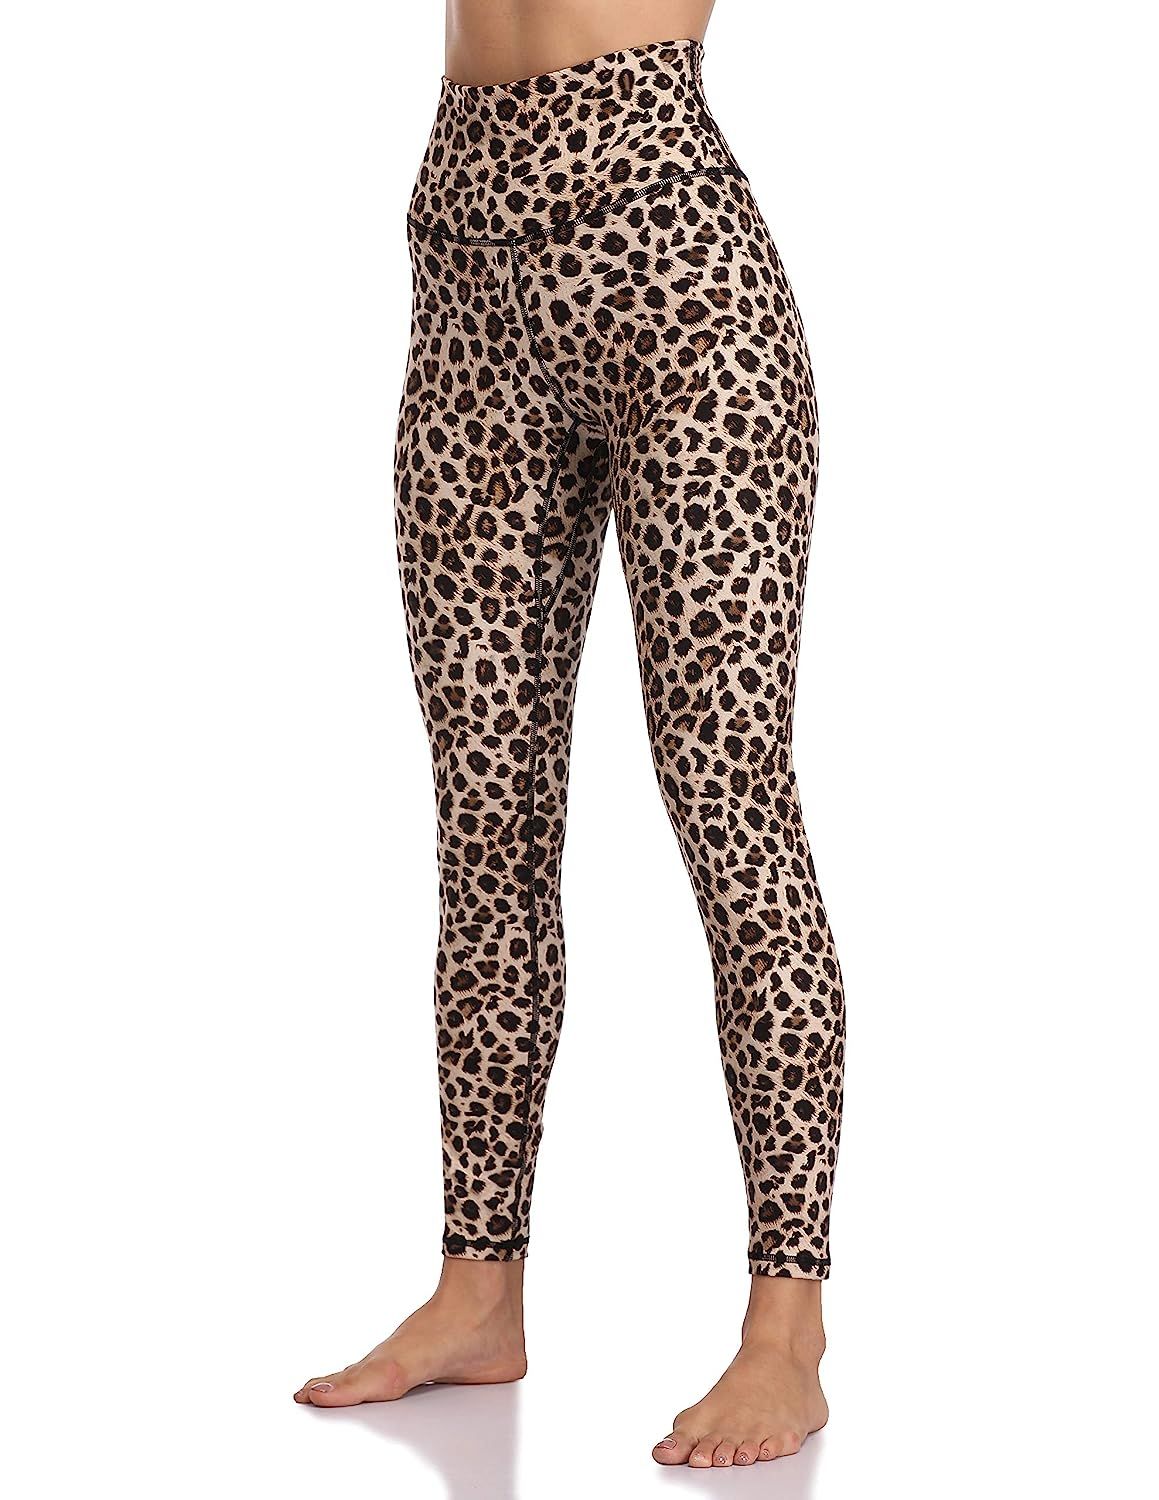 Colorfulkoala Women's High Waisted Pattern Leggings Full-Length Yoga Pants | Amazon (US)